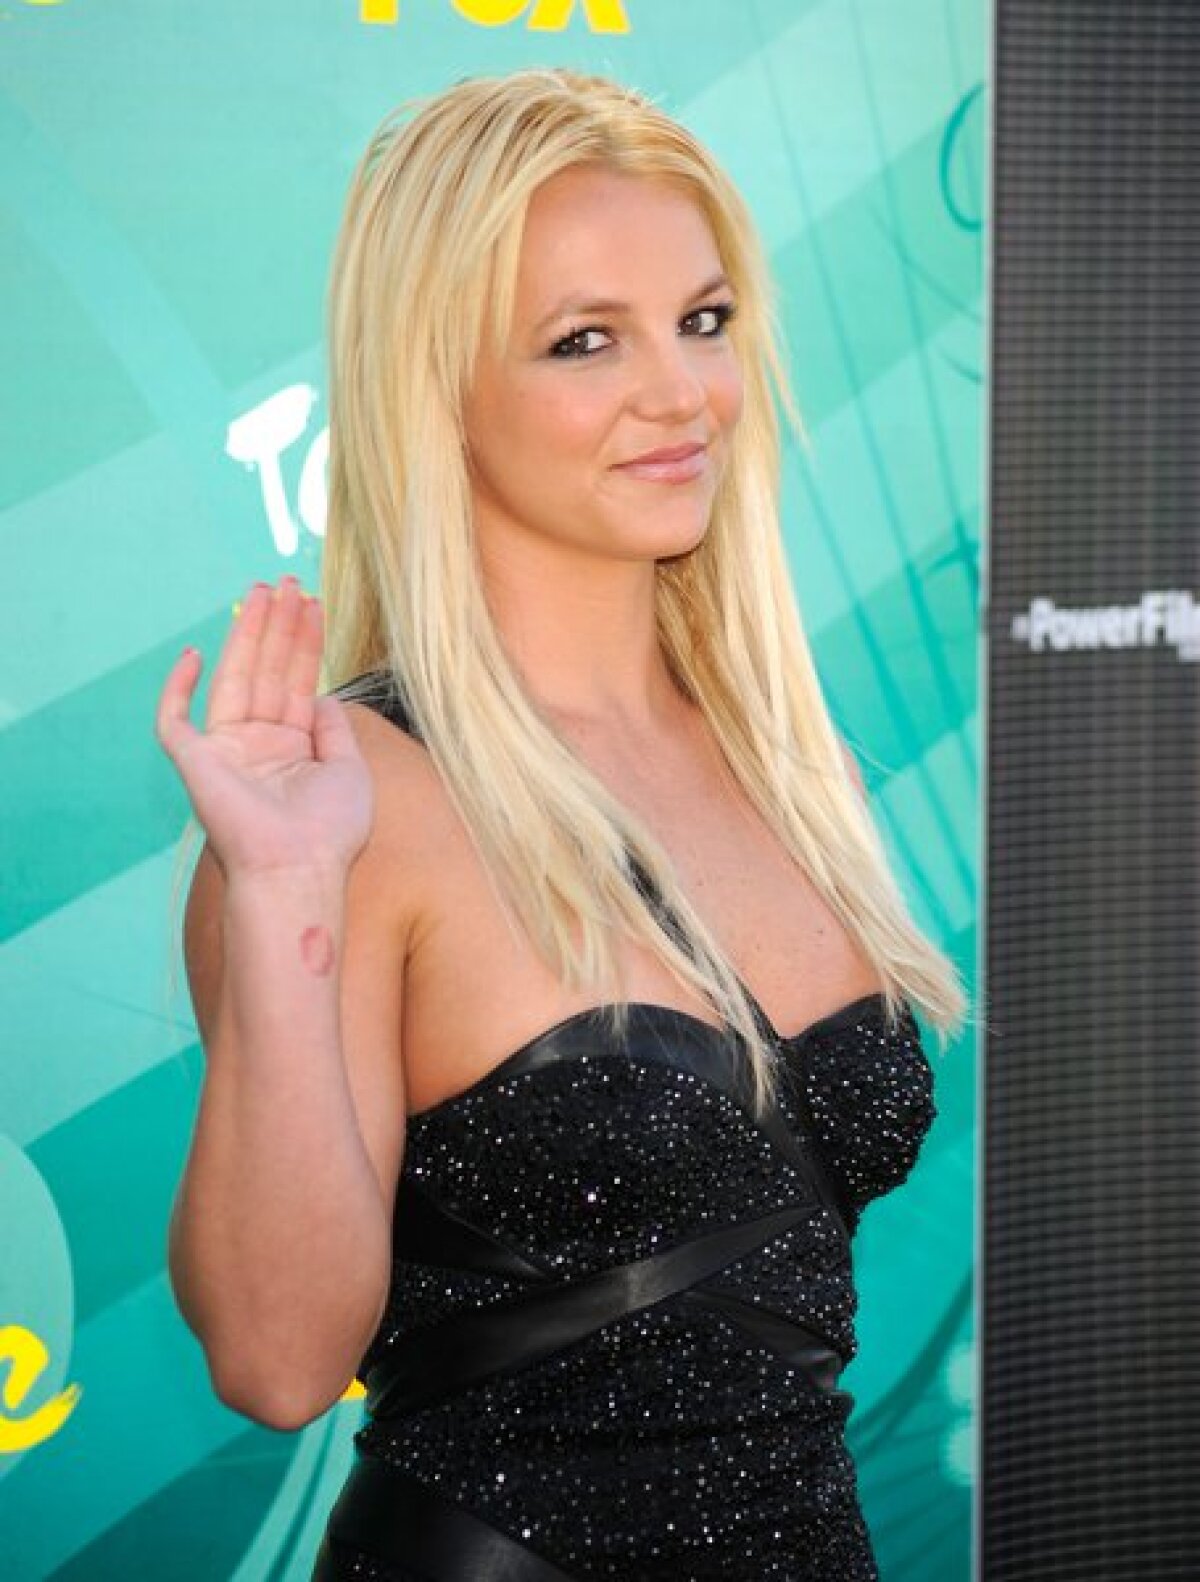 FOTO Nu și-a pierdut farmecul! Britney Spears e la fel de sexy ca în anii '90: imagini HOT